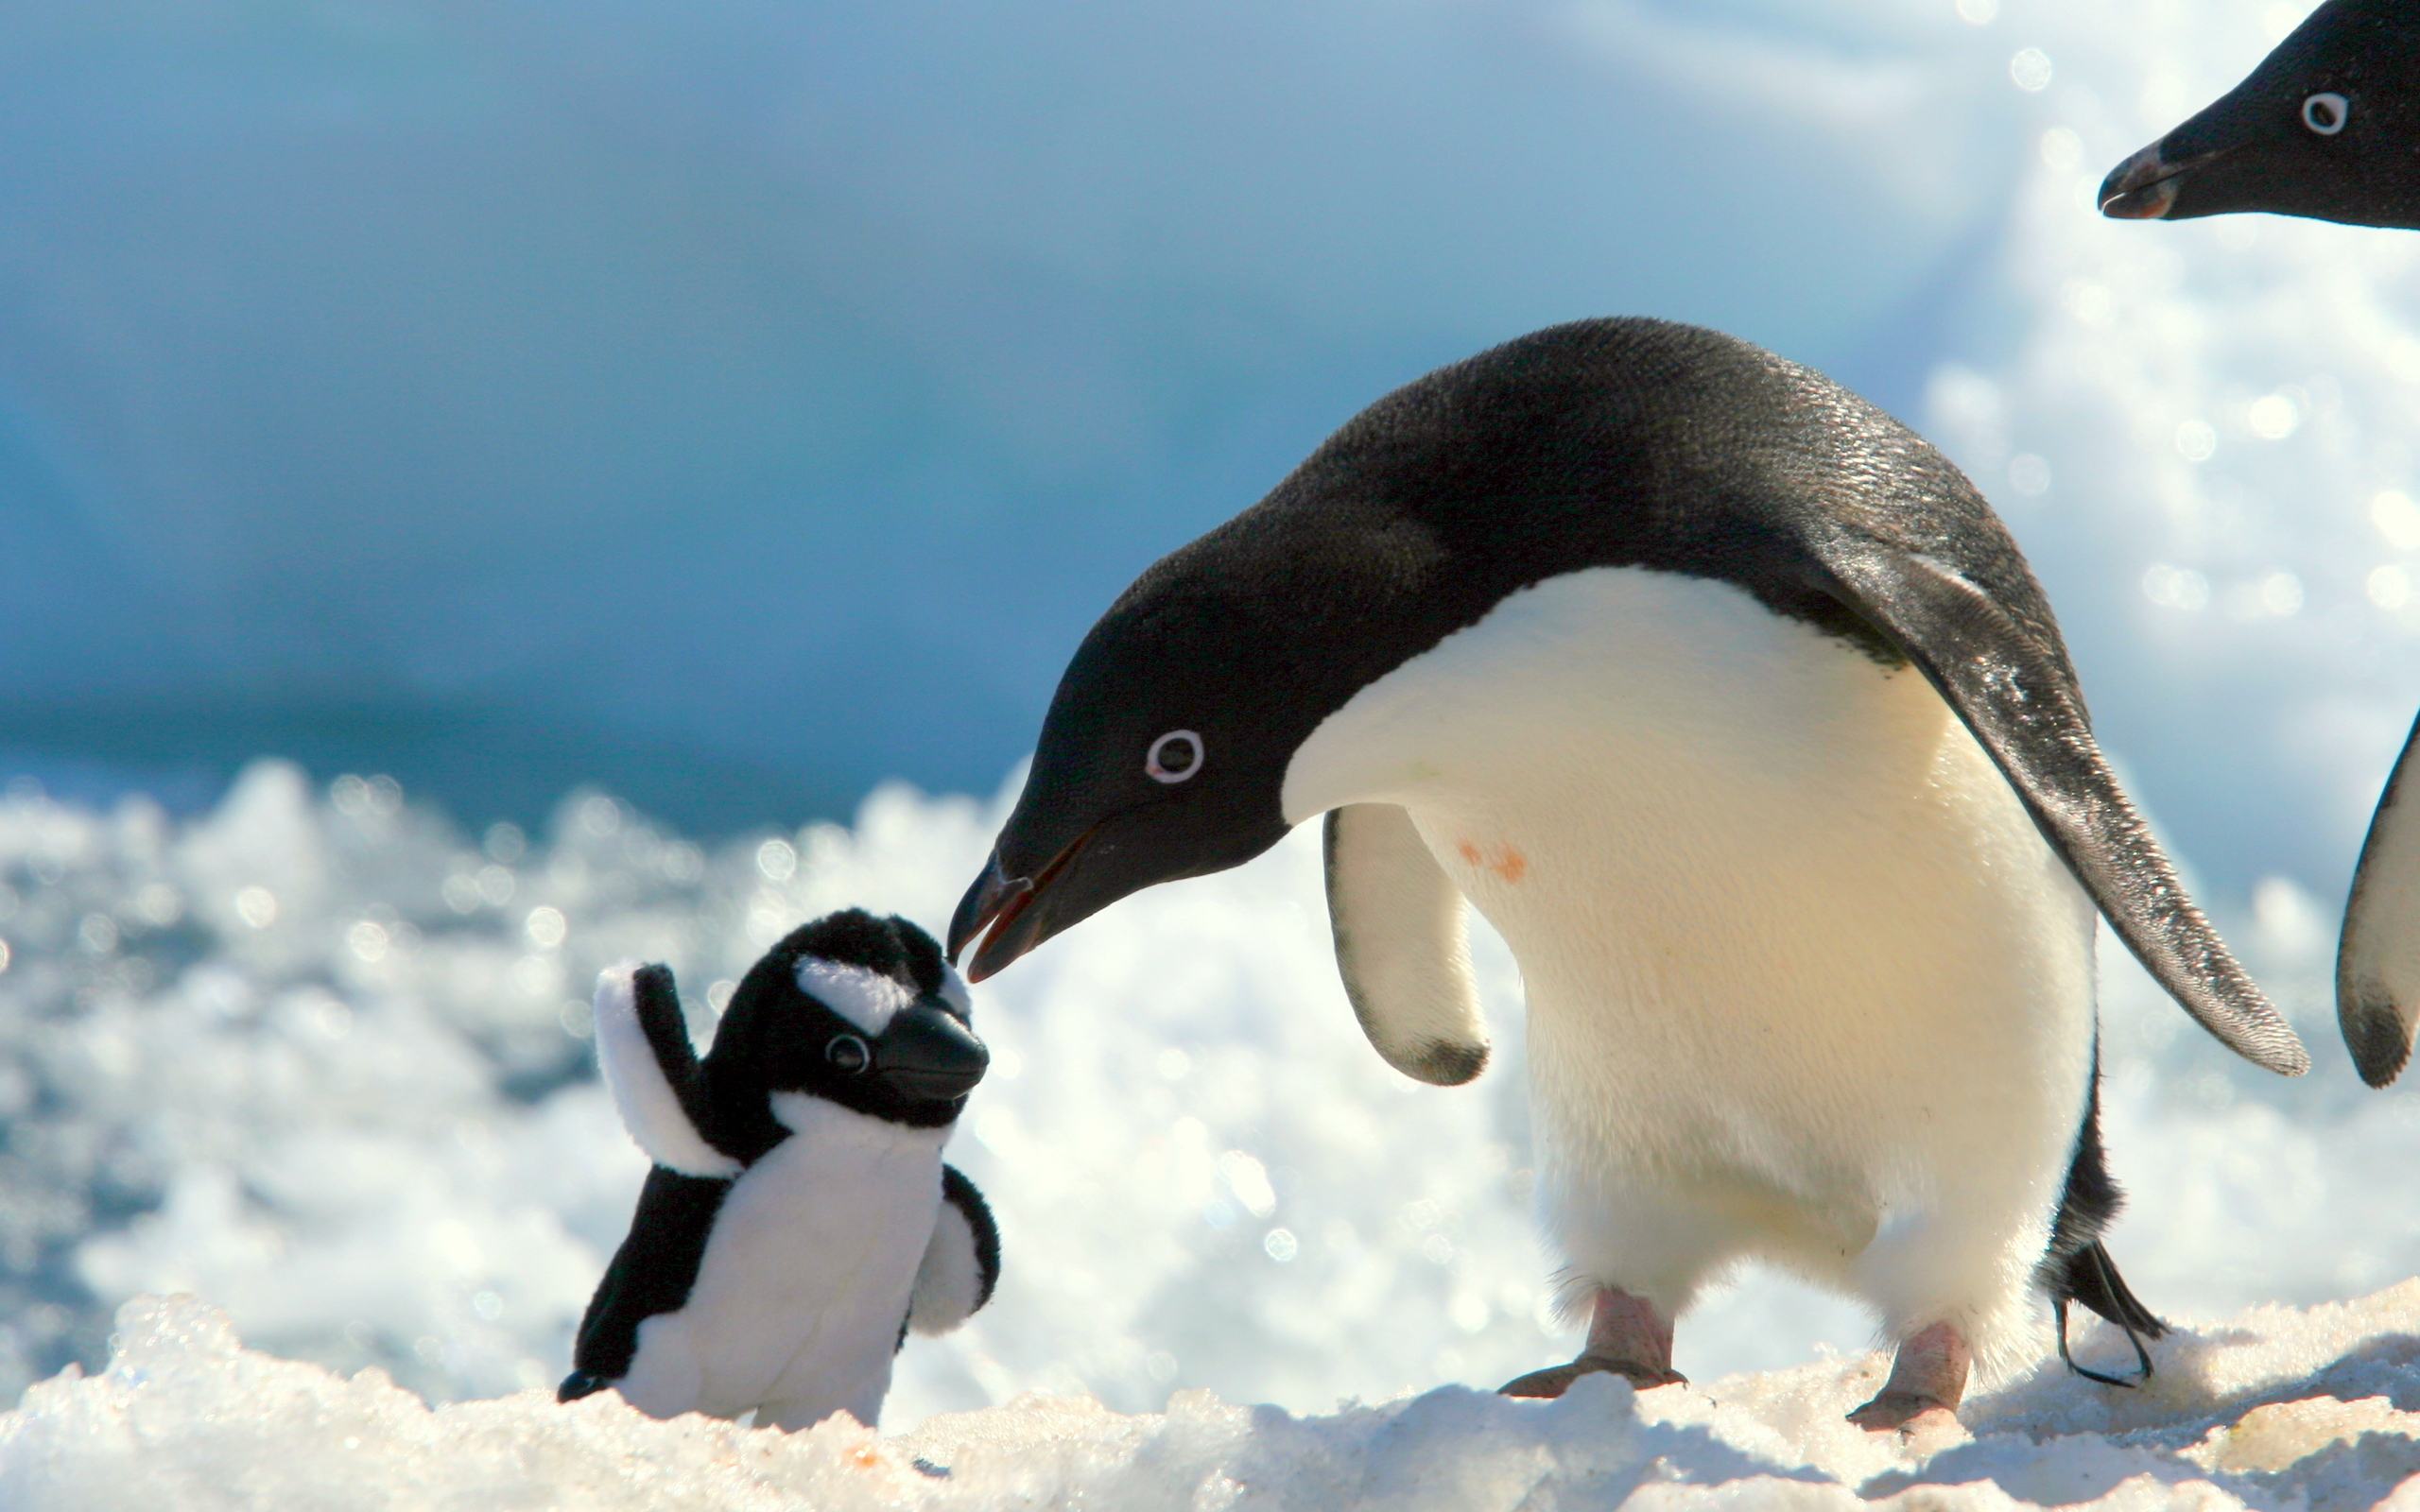 Chú chim cánh cụt thật đáng yêu khi nhìn thấy chú chim cánh cụt bông